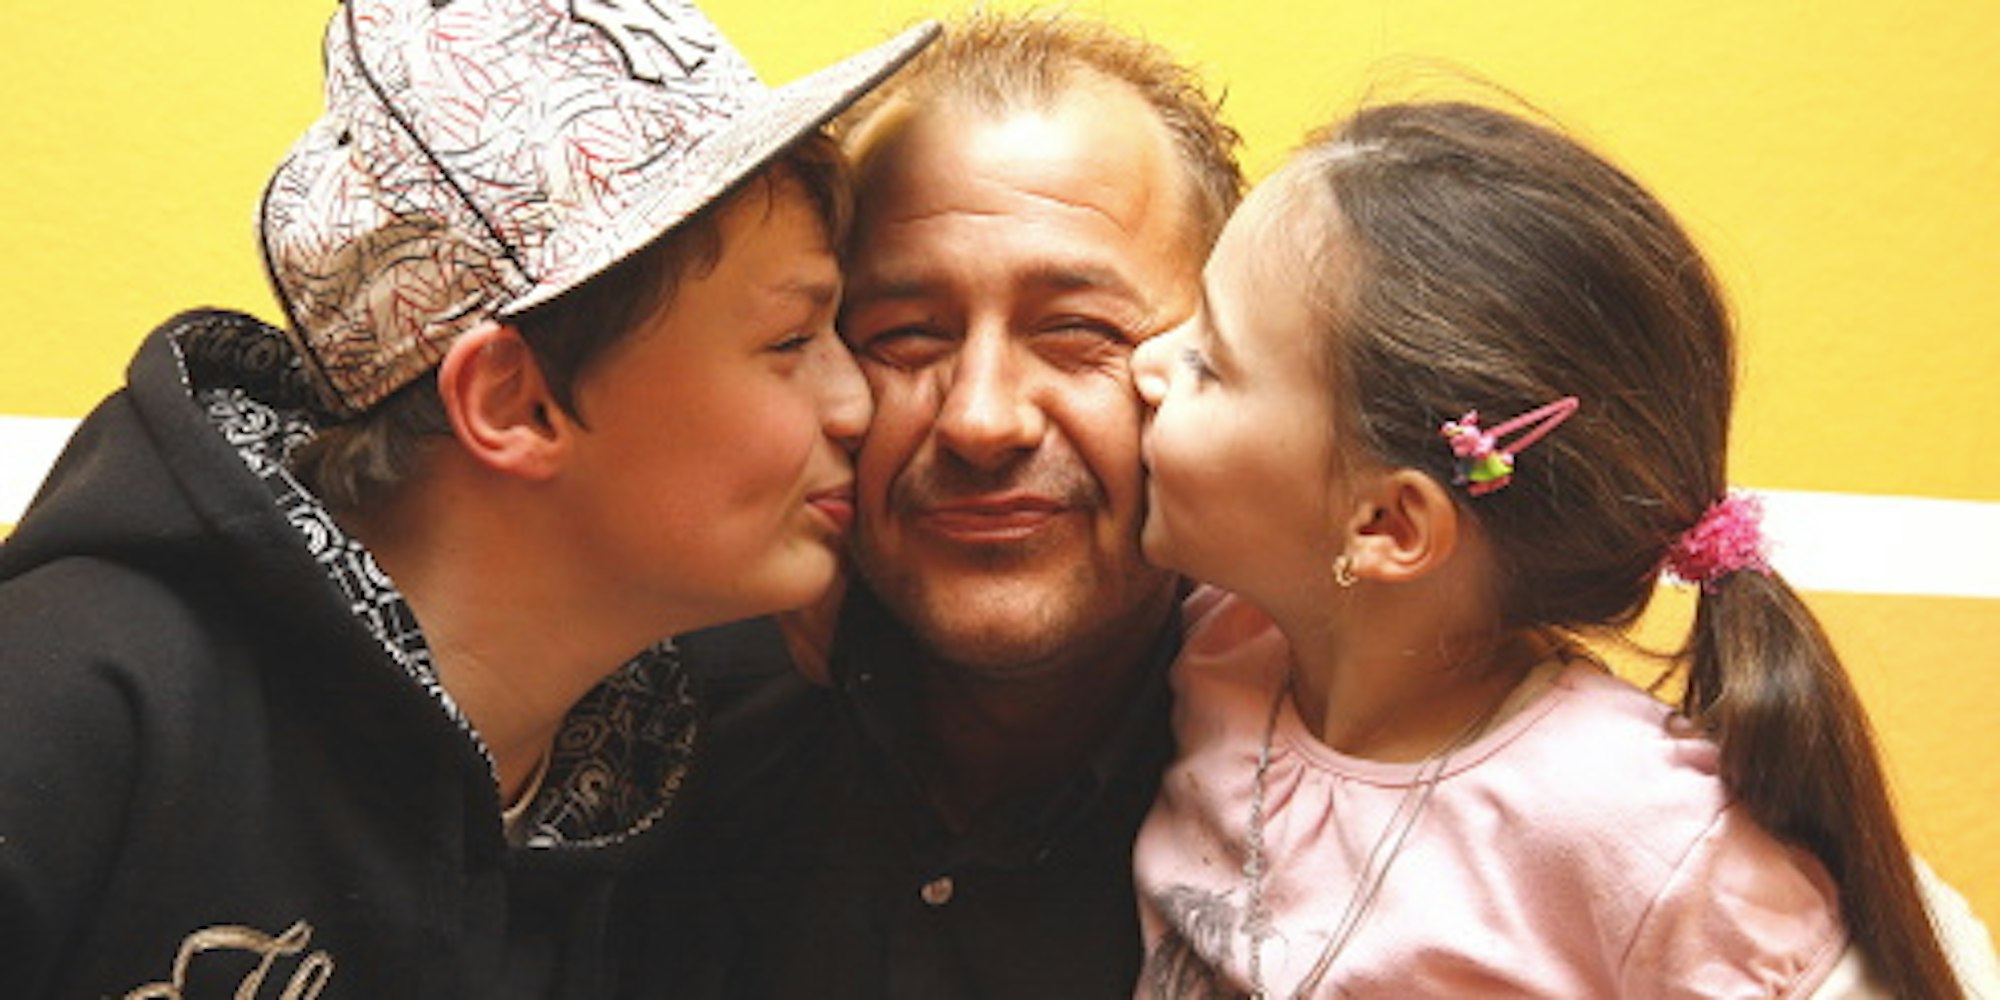 Nüchtern ist er ein liebevoller Vater: Willi Herren mit Sohn Stefano und Tochter Alessia.